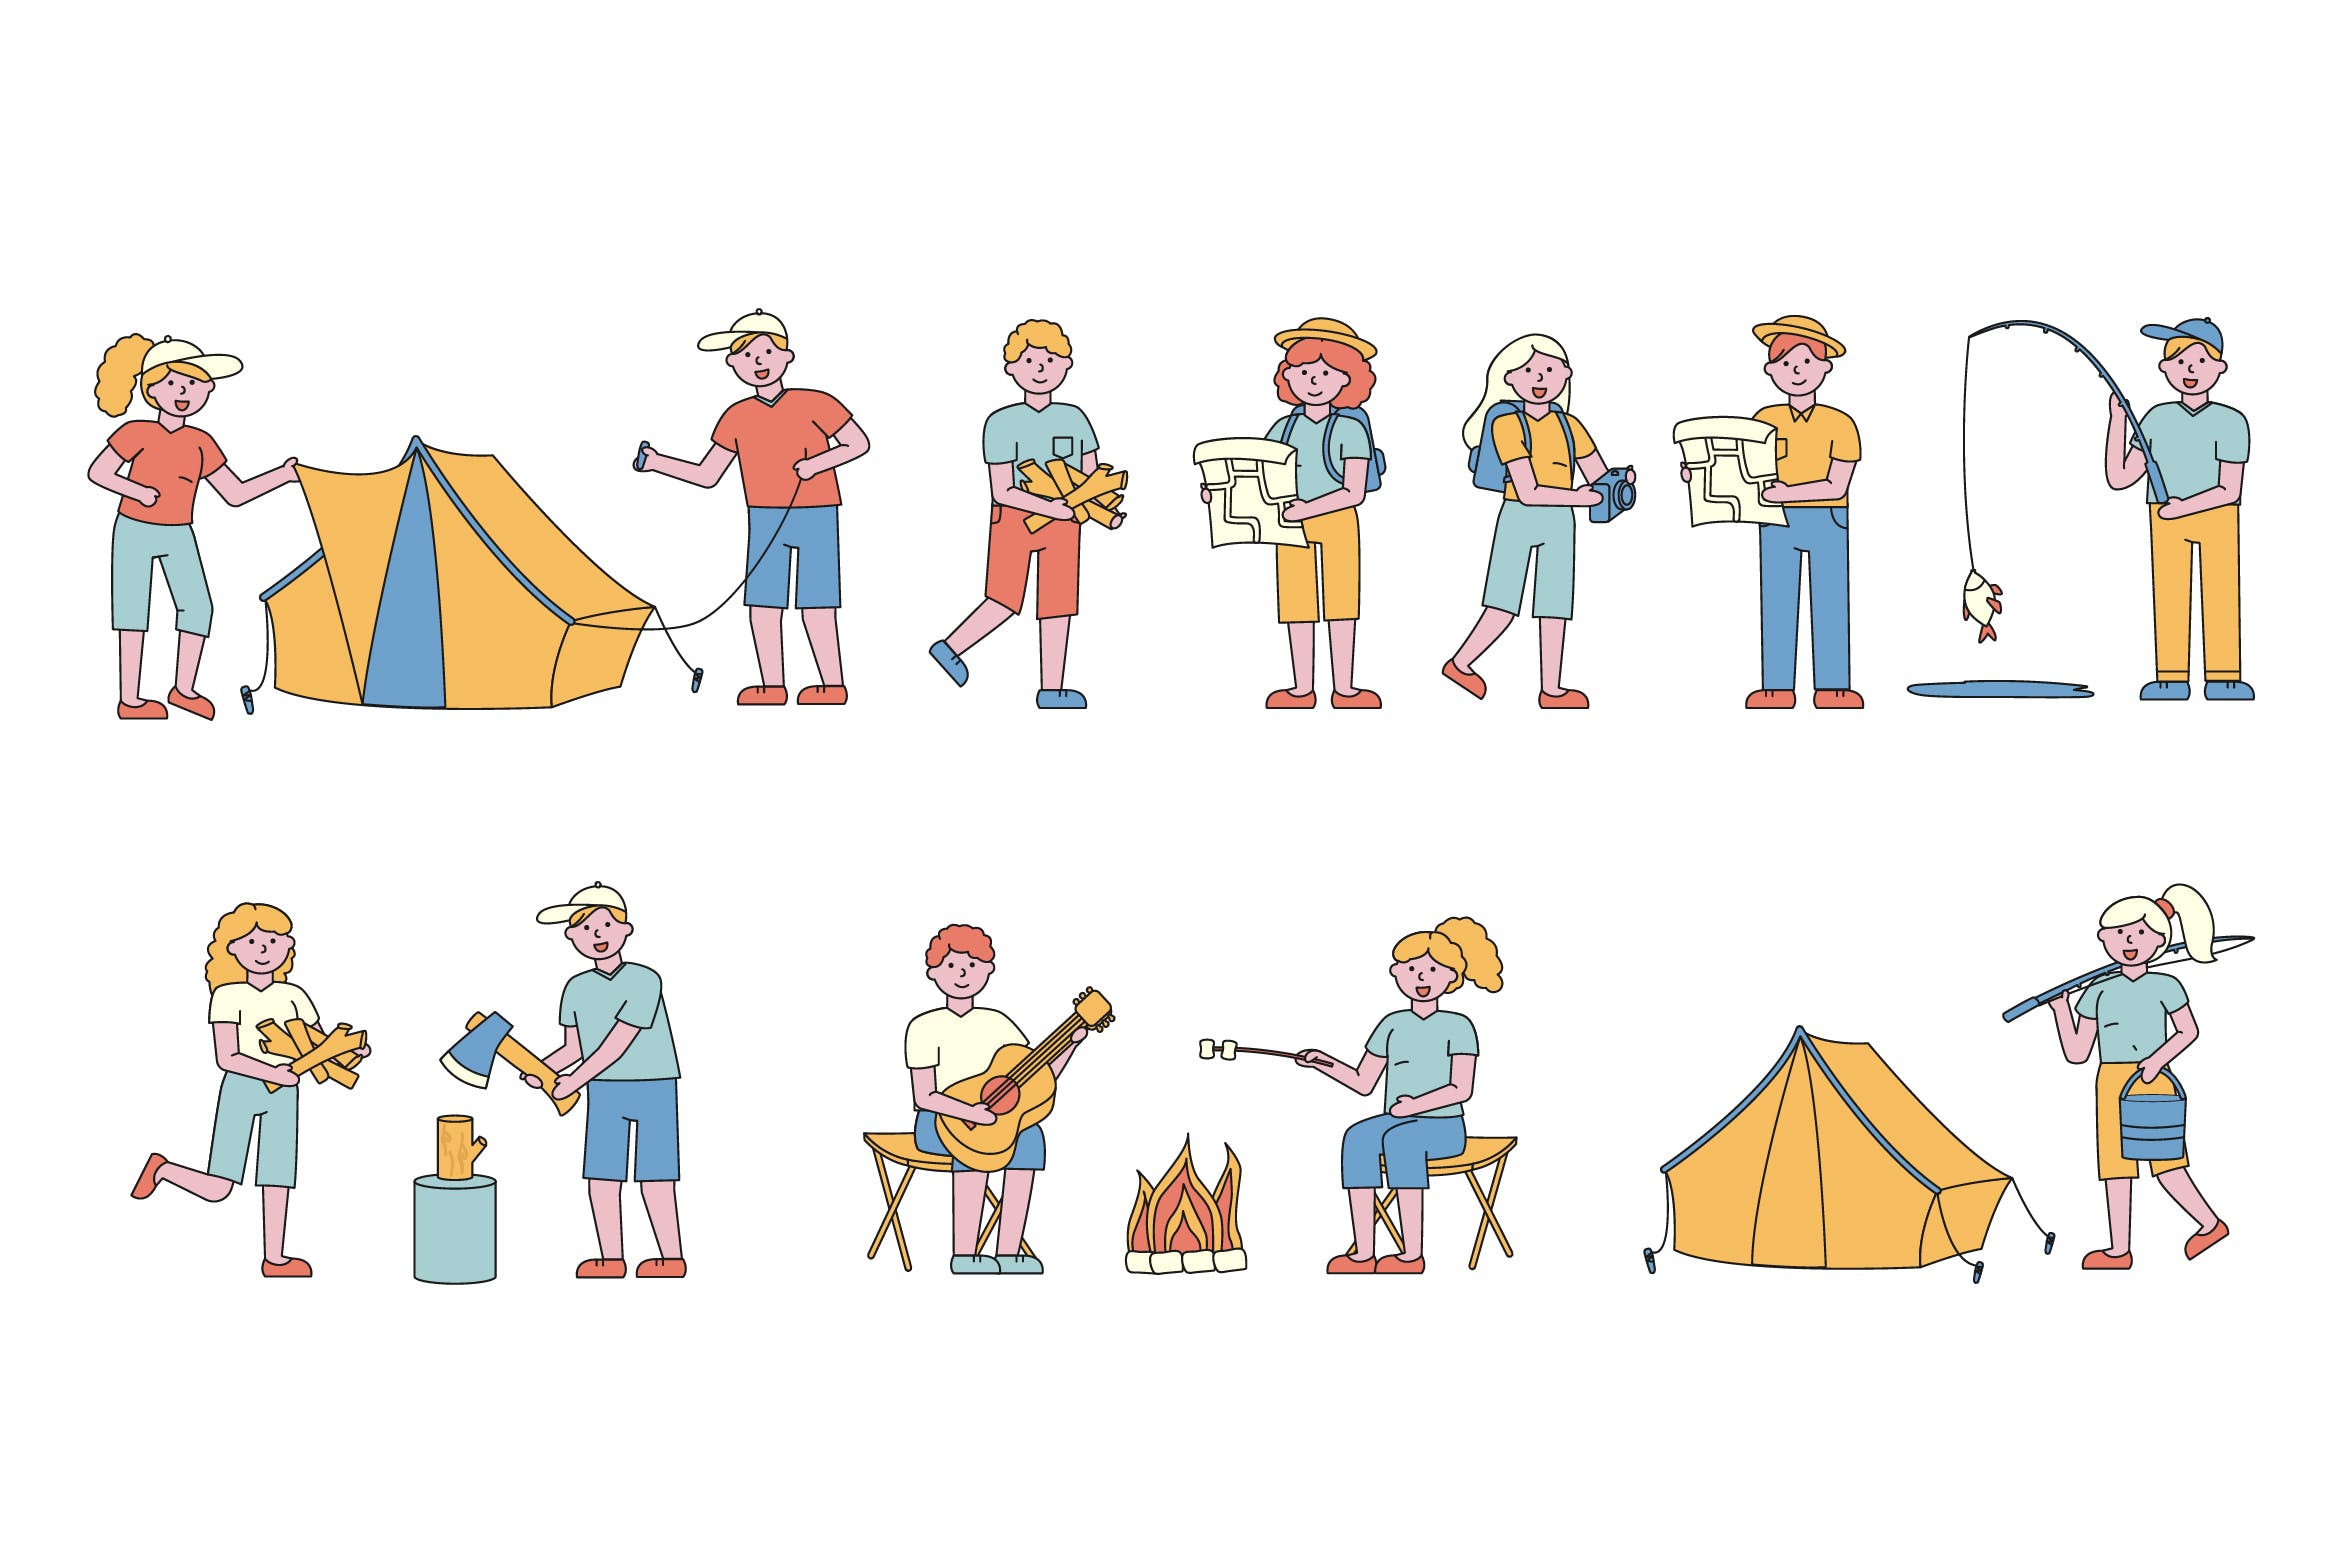 野营户外运动主题人物形象线条艺术矢量插画大洋岛精选素材 Campers Lineart People Character Collection插图